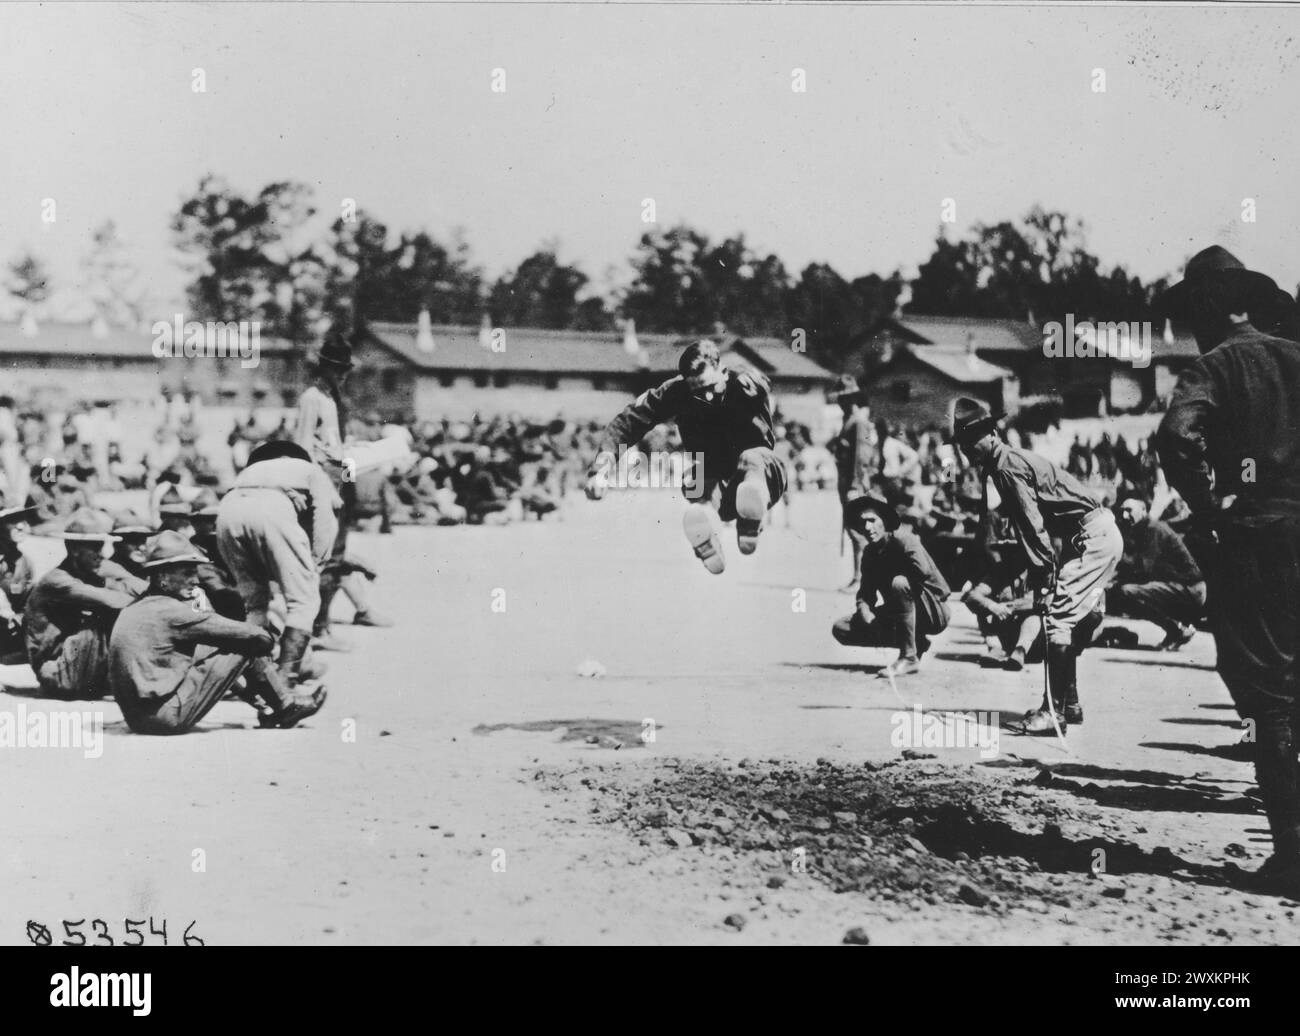 Soldats à la U.S. School of Military Aeronautics, Ohio State College, événements Field Day, ici, un soldat participe à un événement de saut en longueur CA. 1919 Banque D'Images